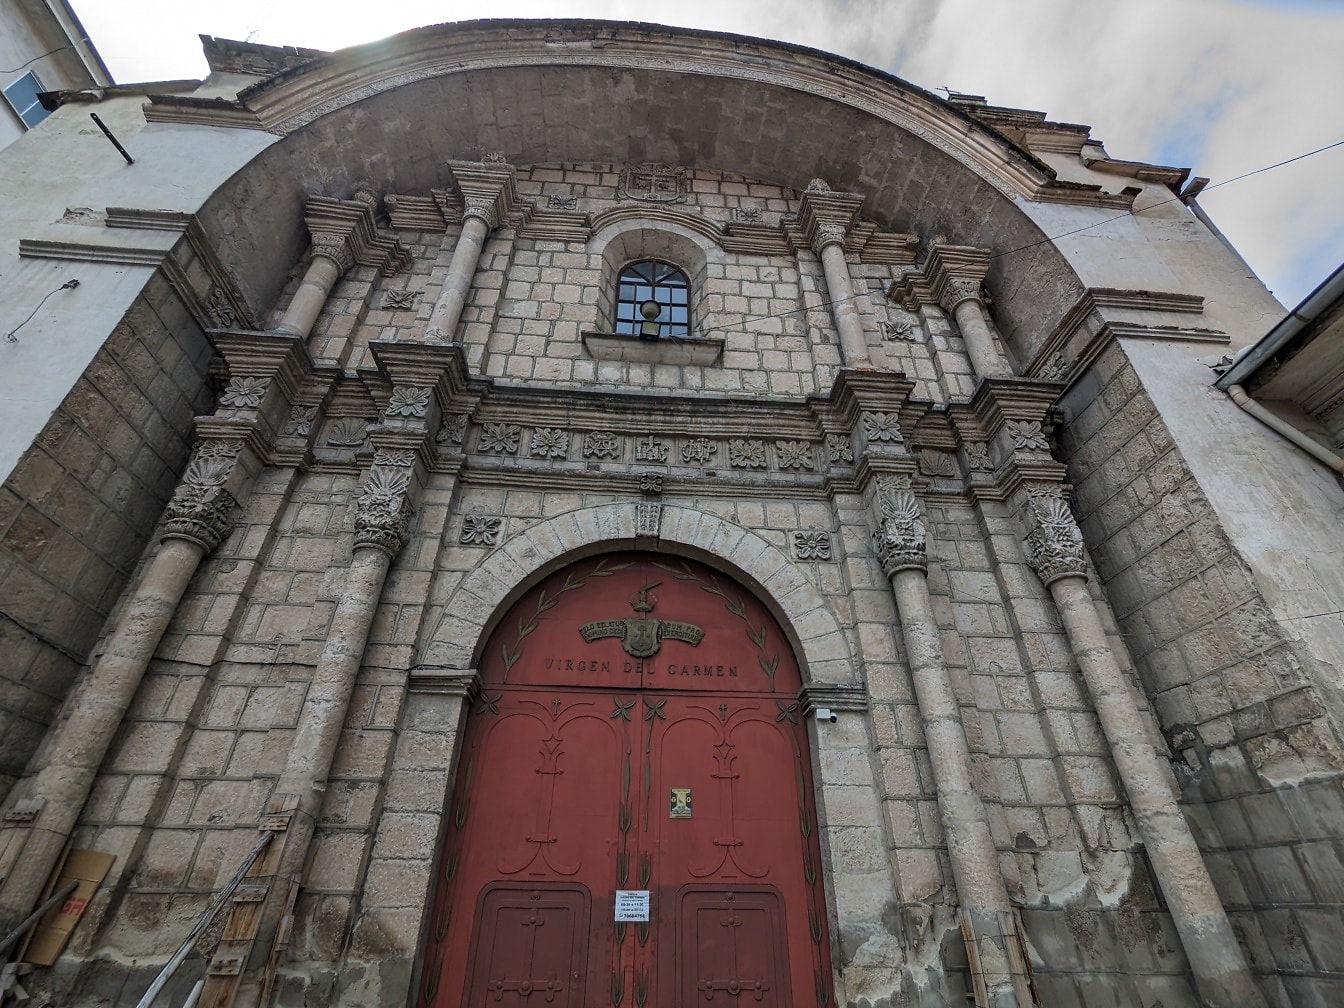 Indgang til kirken af jomfru Carmen med en rød indgangsdør lavet af støbejern